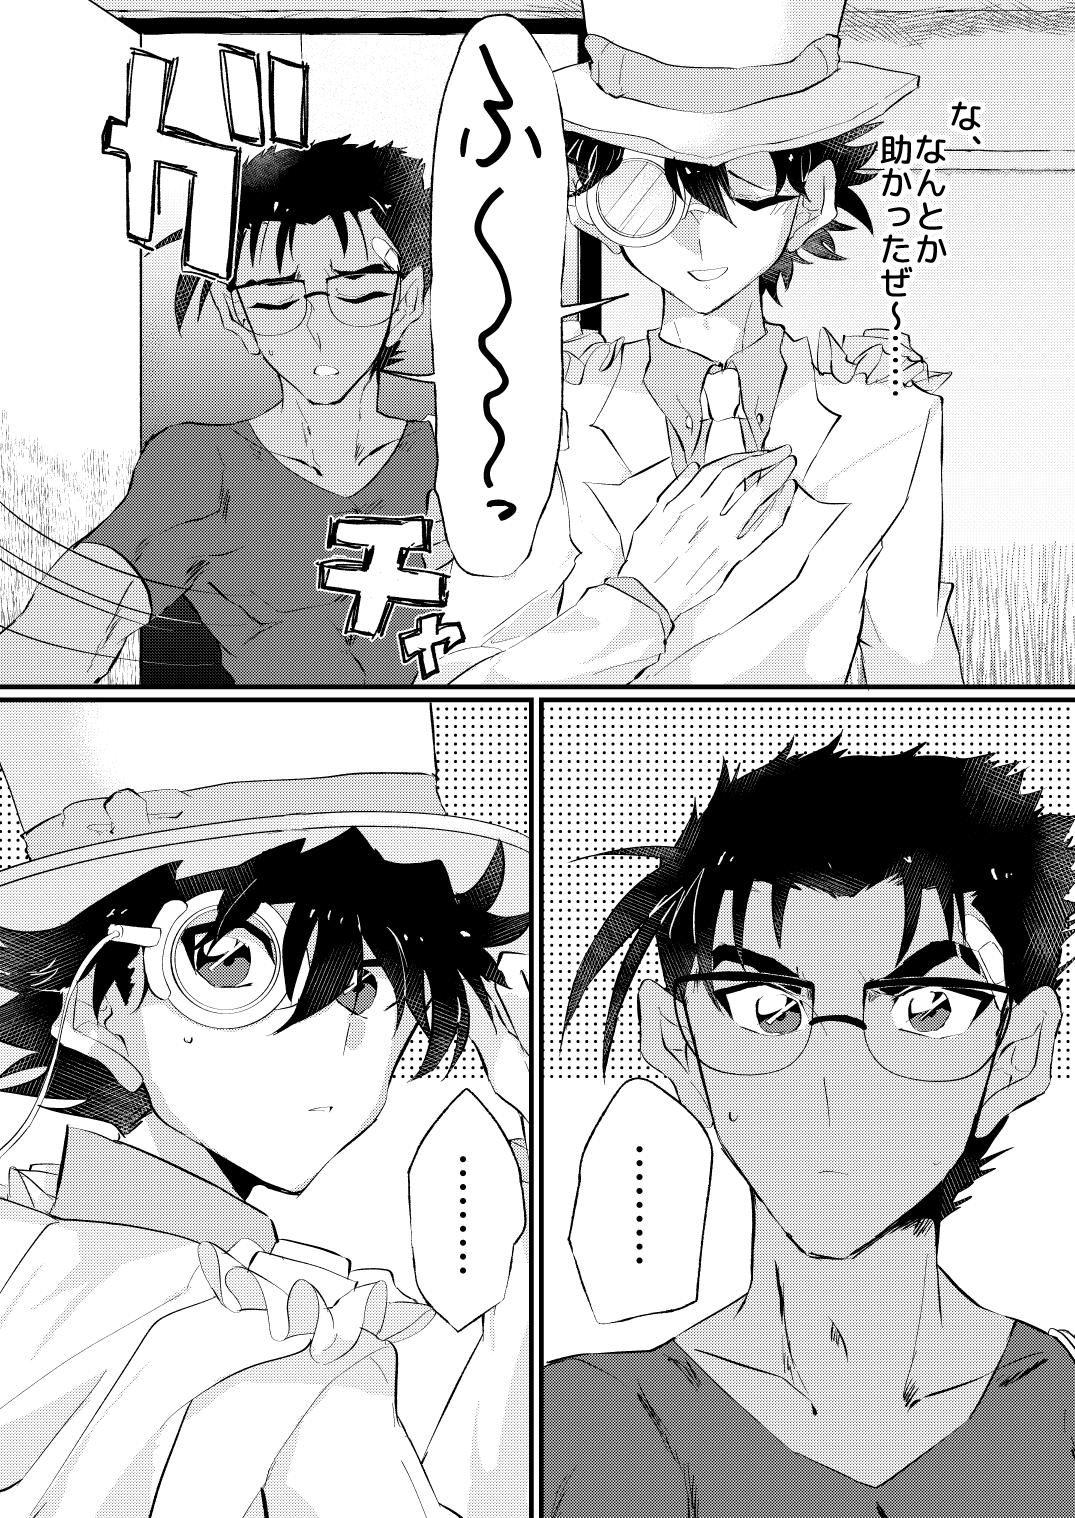 T Girl [404] (Detective Conan) [Digital] - Detective conan | meitantei conan Asstomouth - Page 6